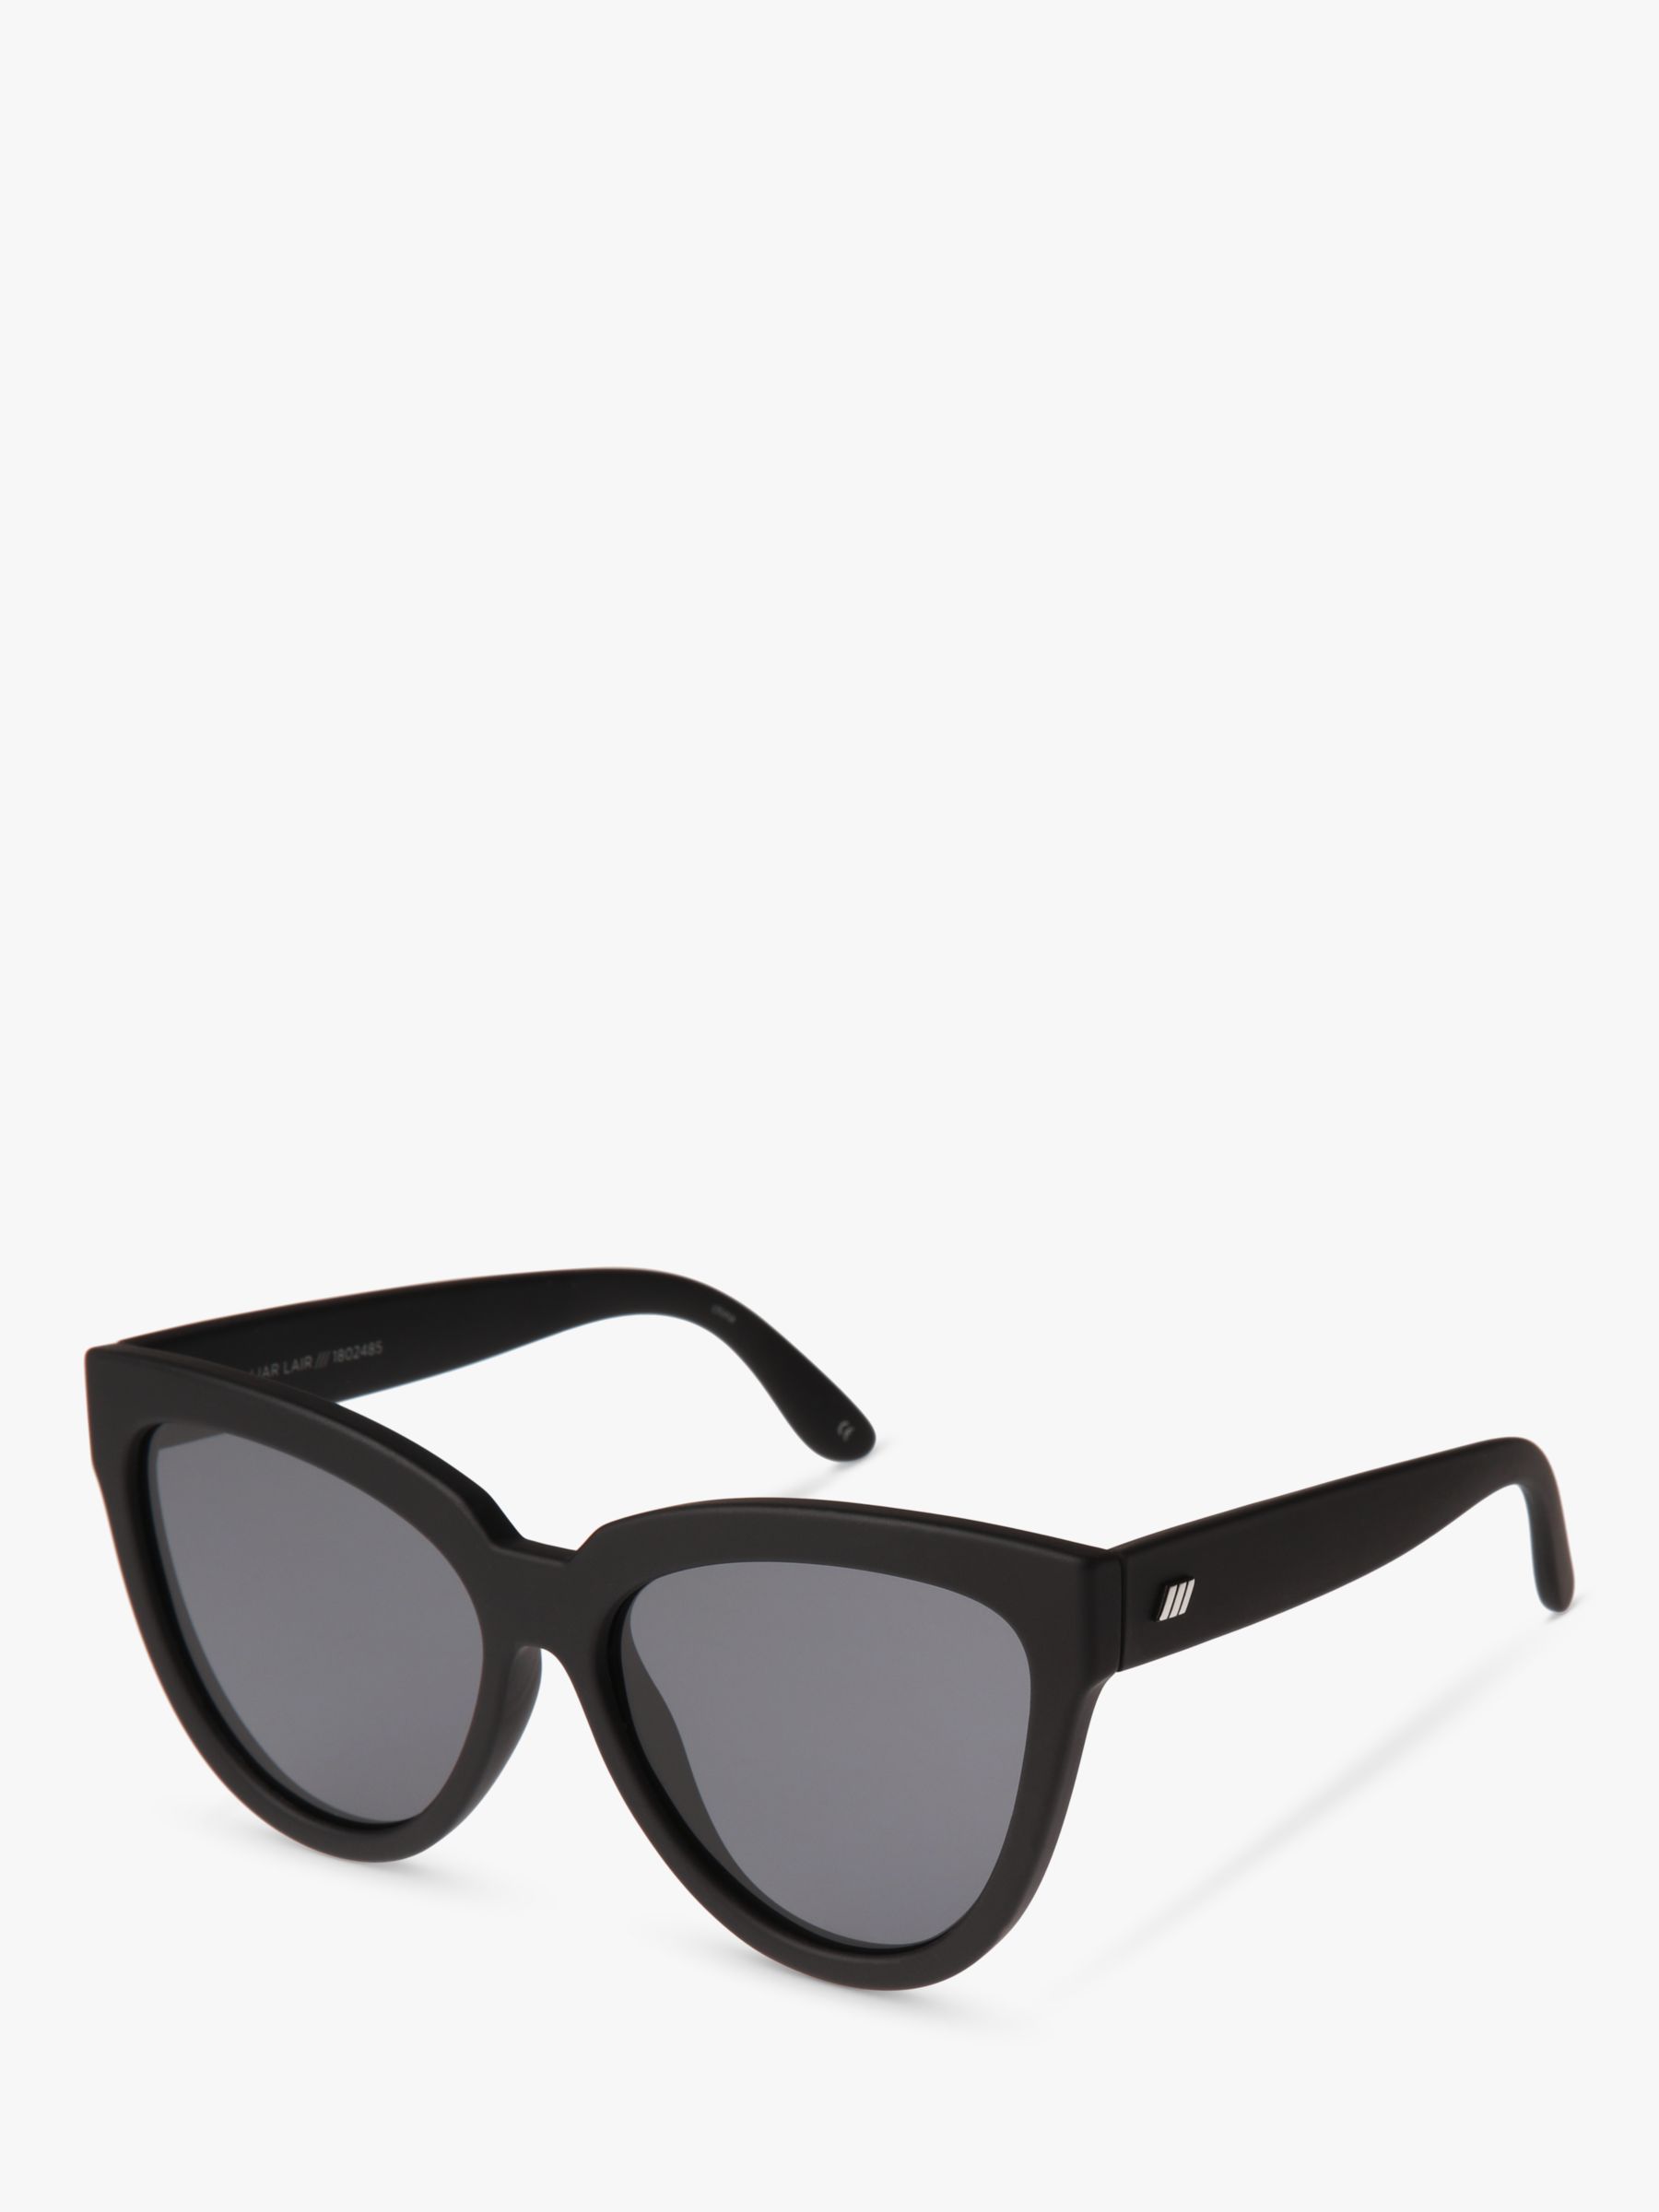 L5000146 Женские поляризационные солнцезащитные очки кошачий глаз Liar Lair Le Specs, черный